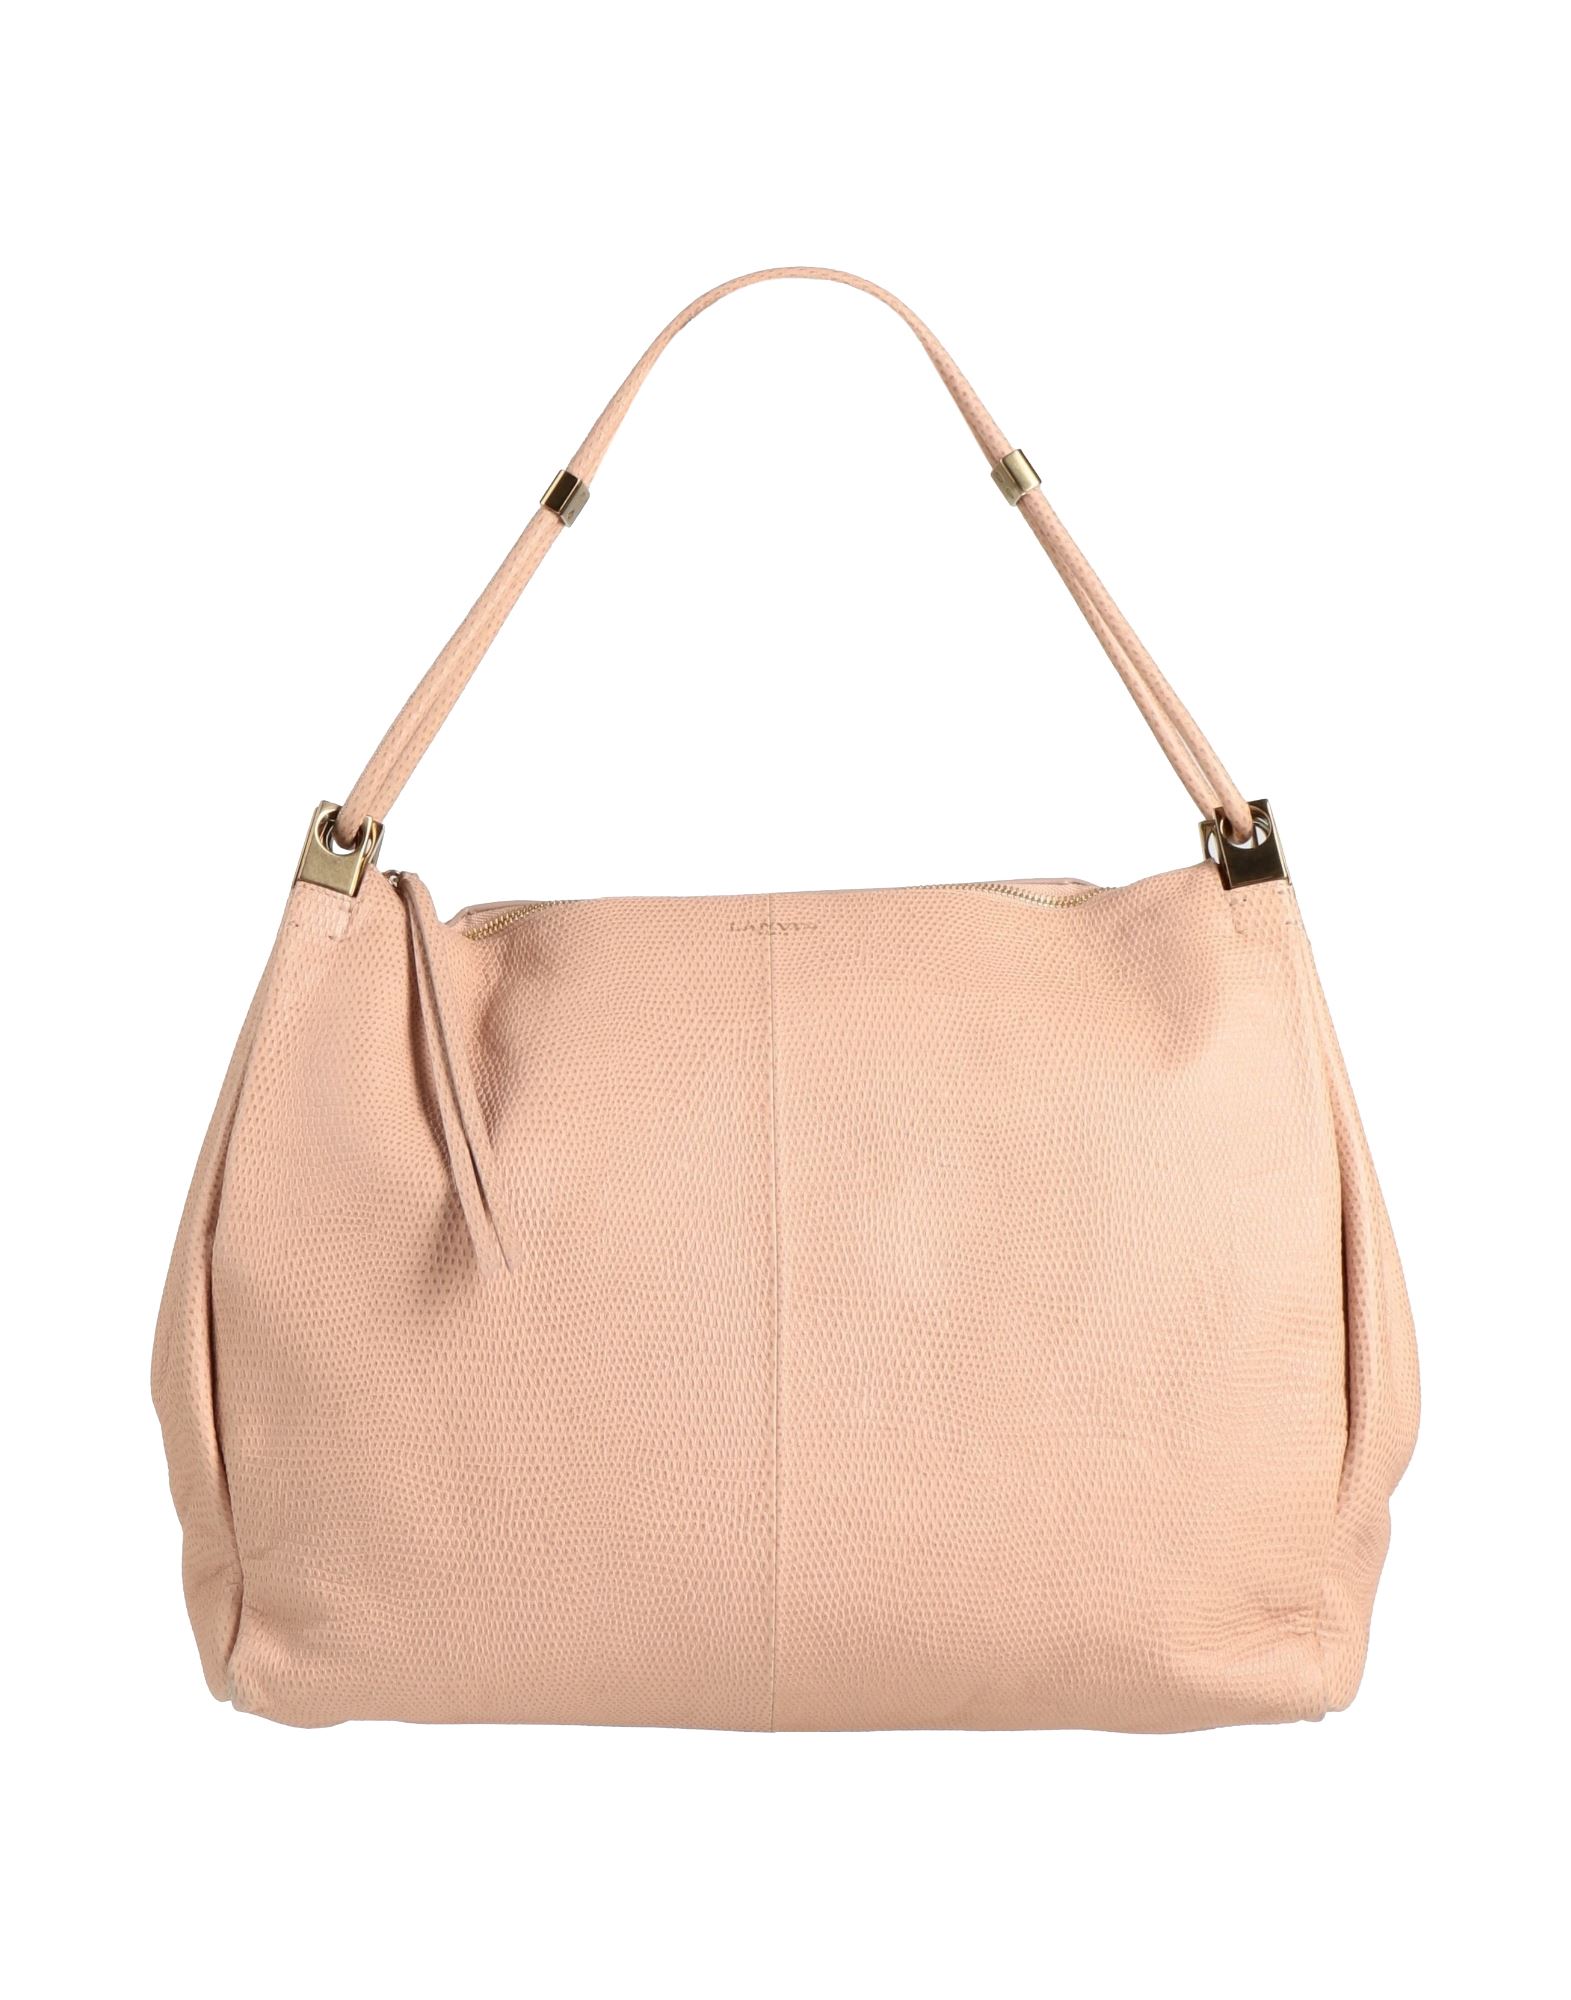 Lanvin Handbags In Blush